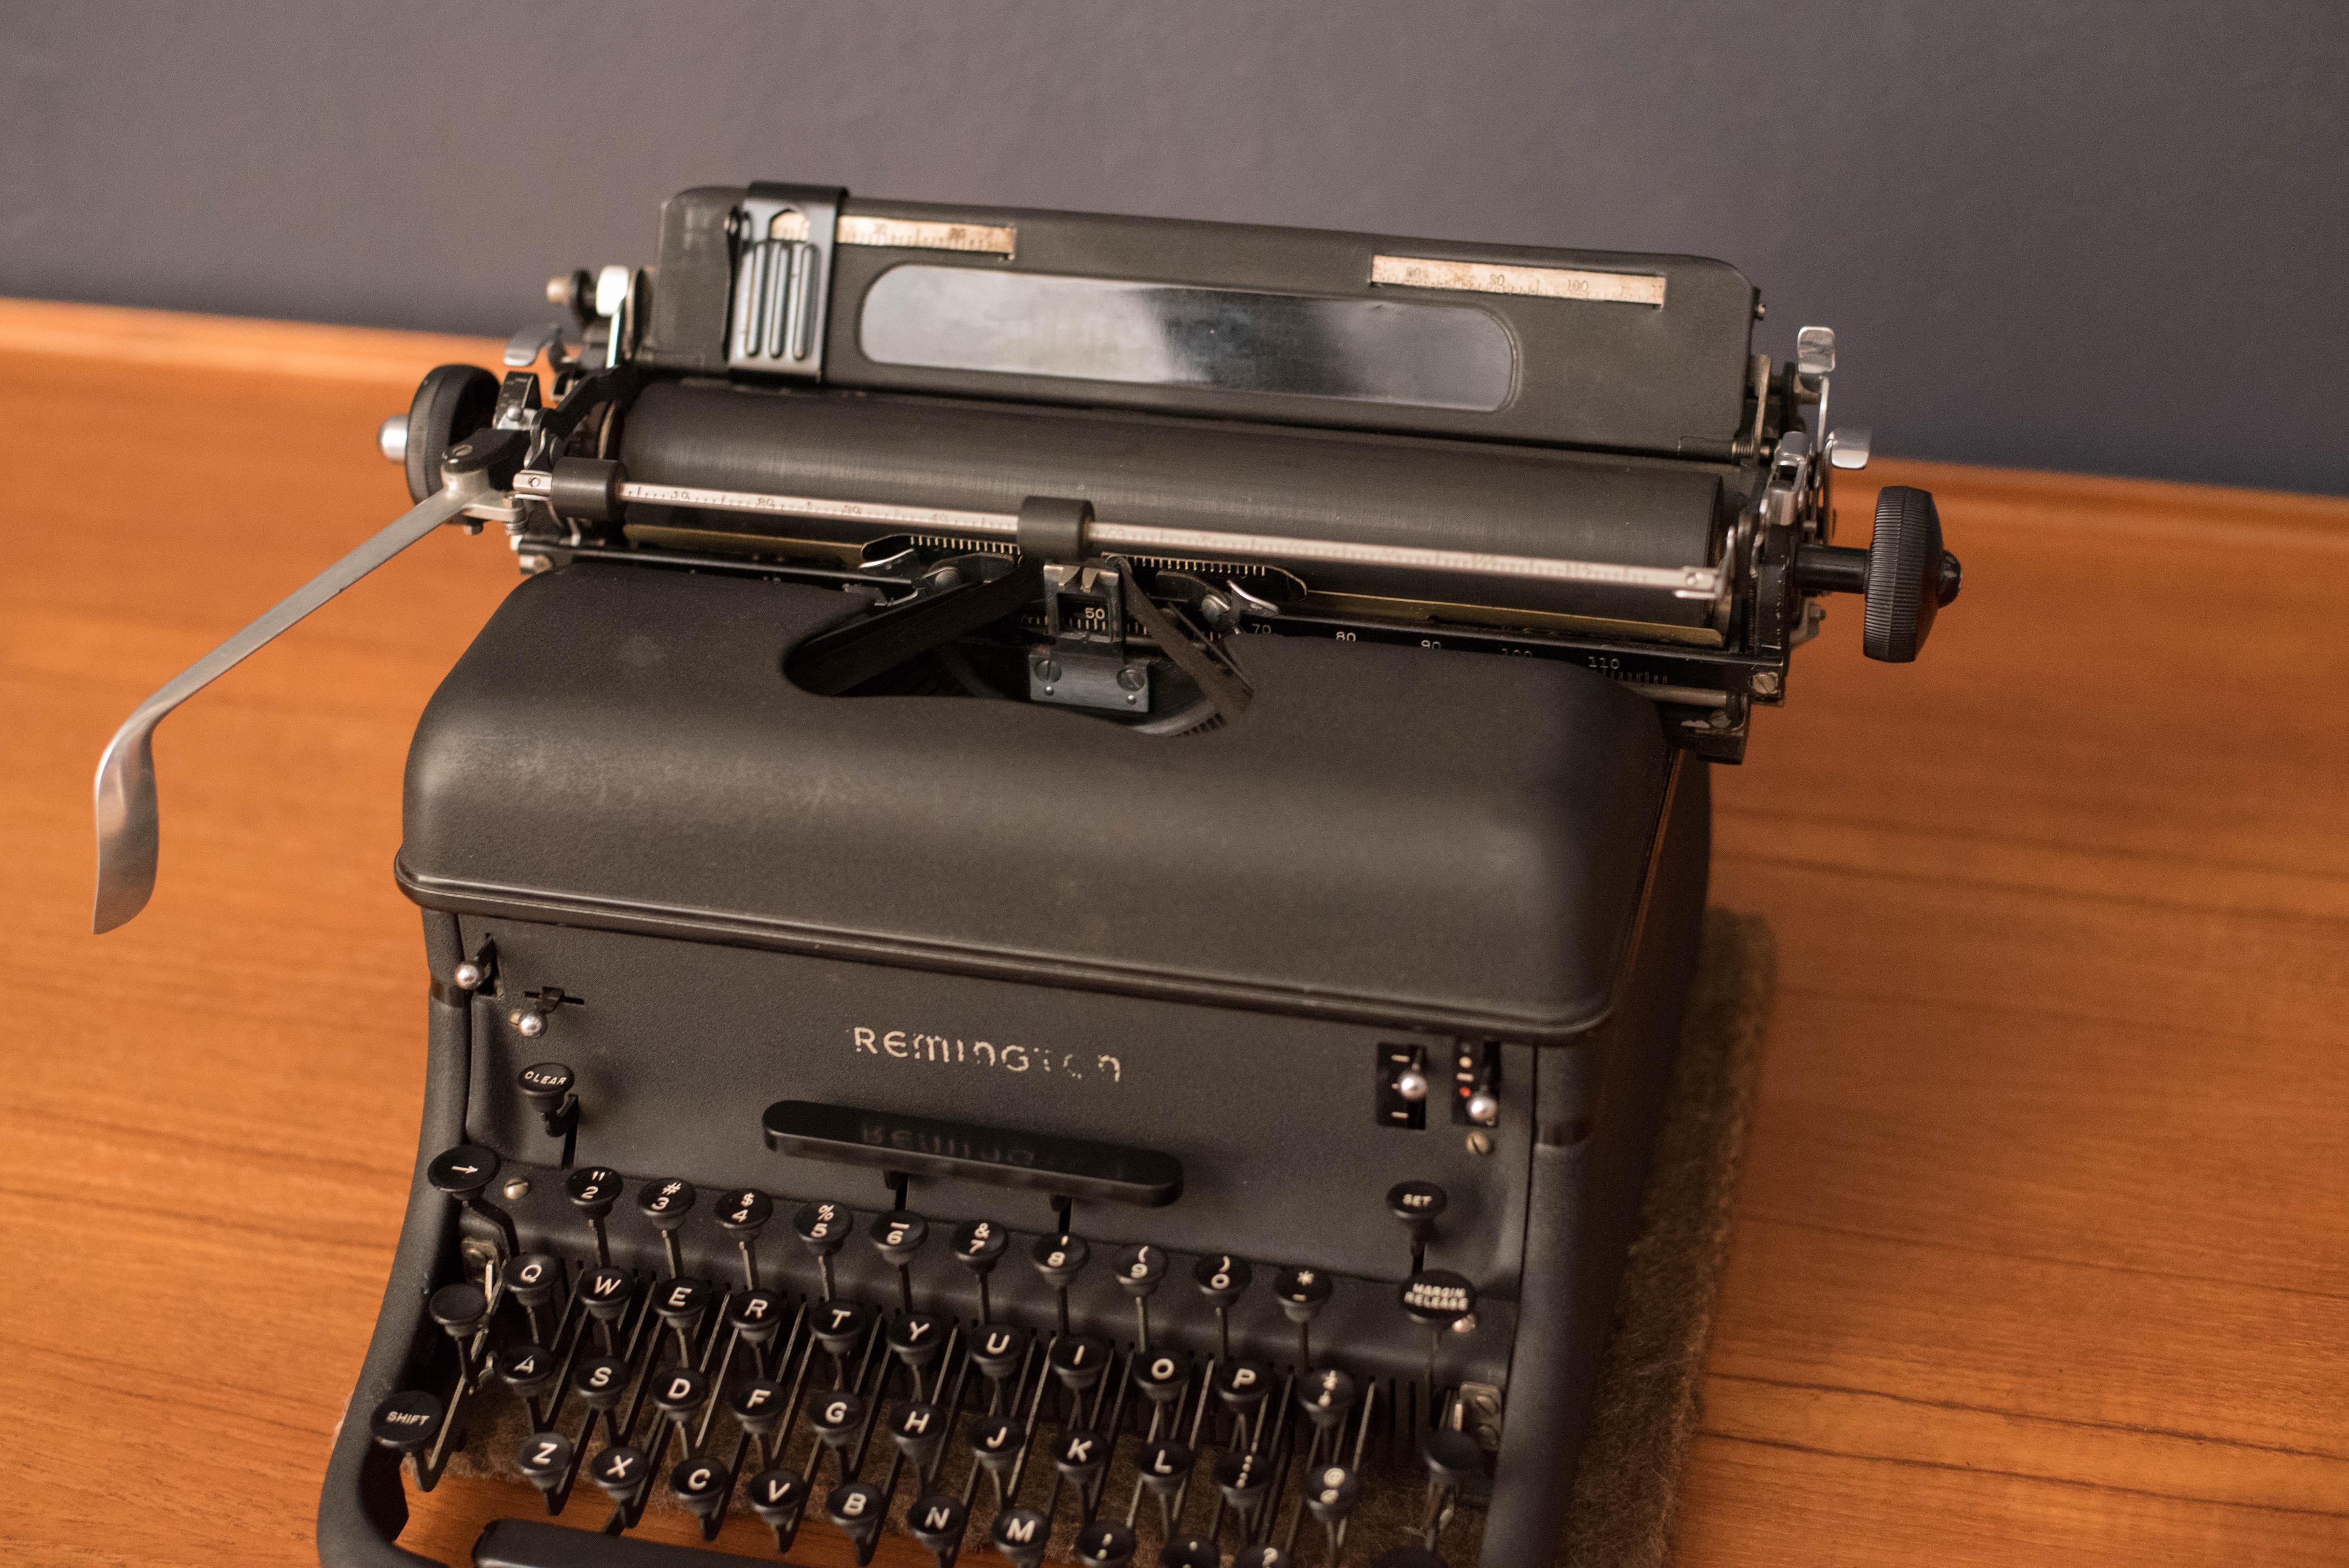 1960's remington typewriter